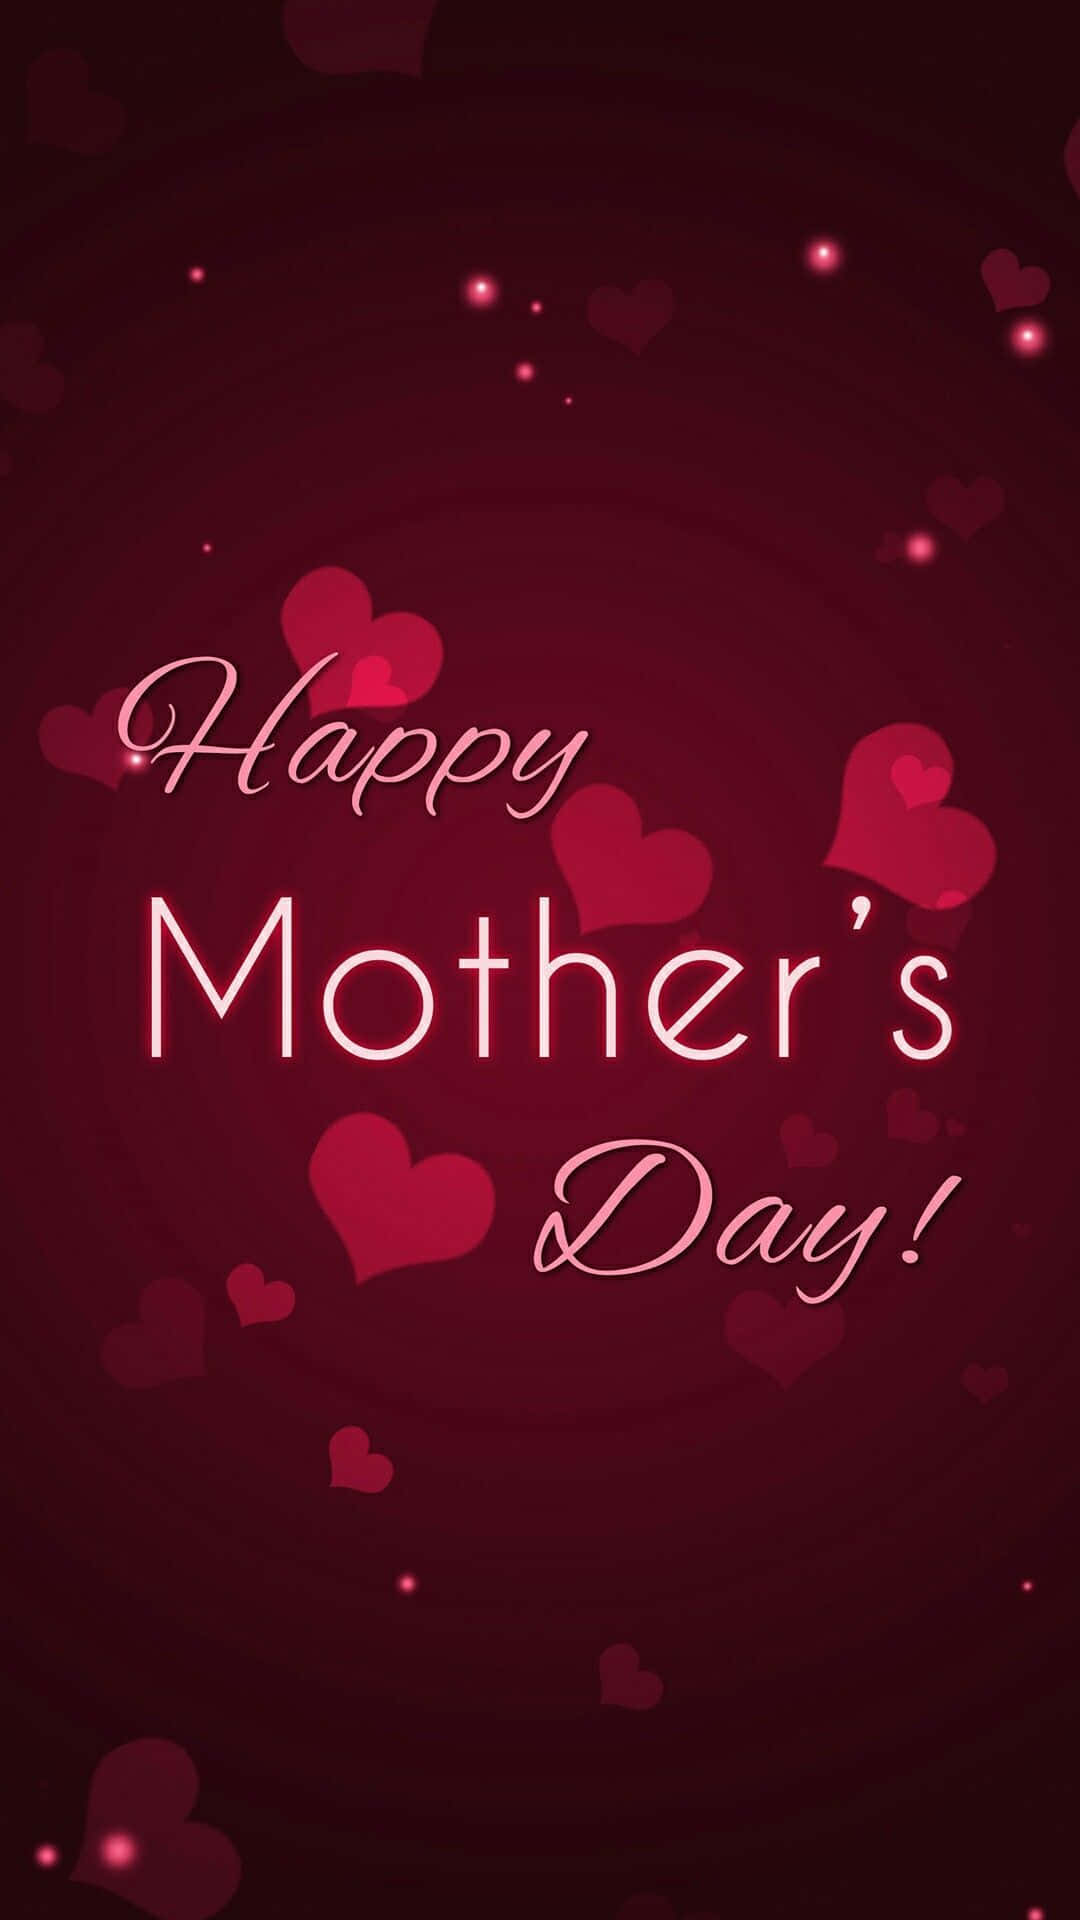 Fejr denne særlige dag sammen med den, der elsker dig ubetinget - Glædelig mors dag!